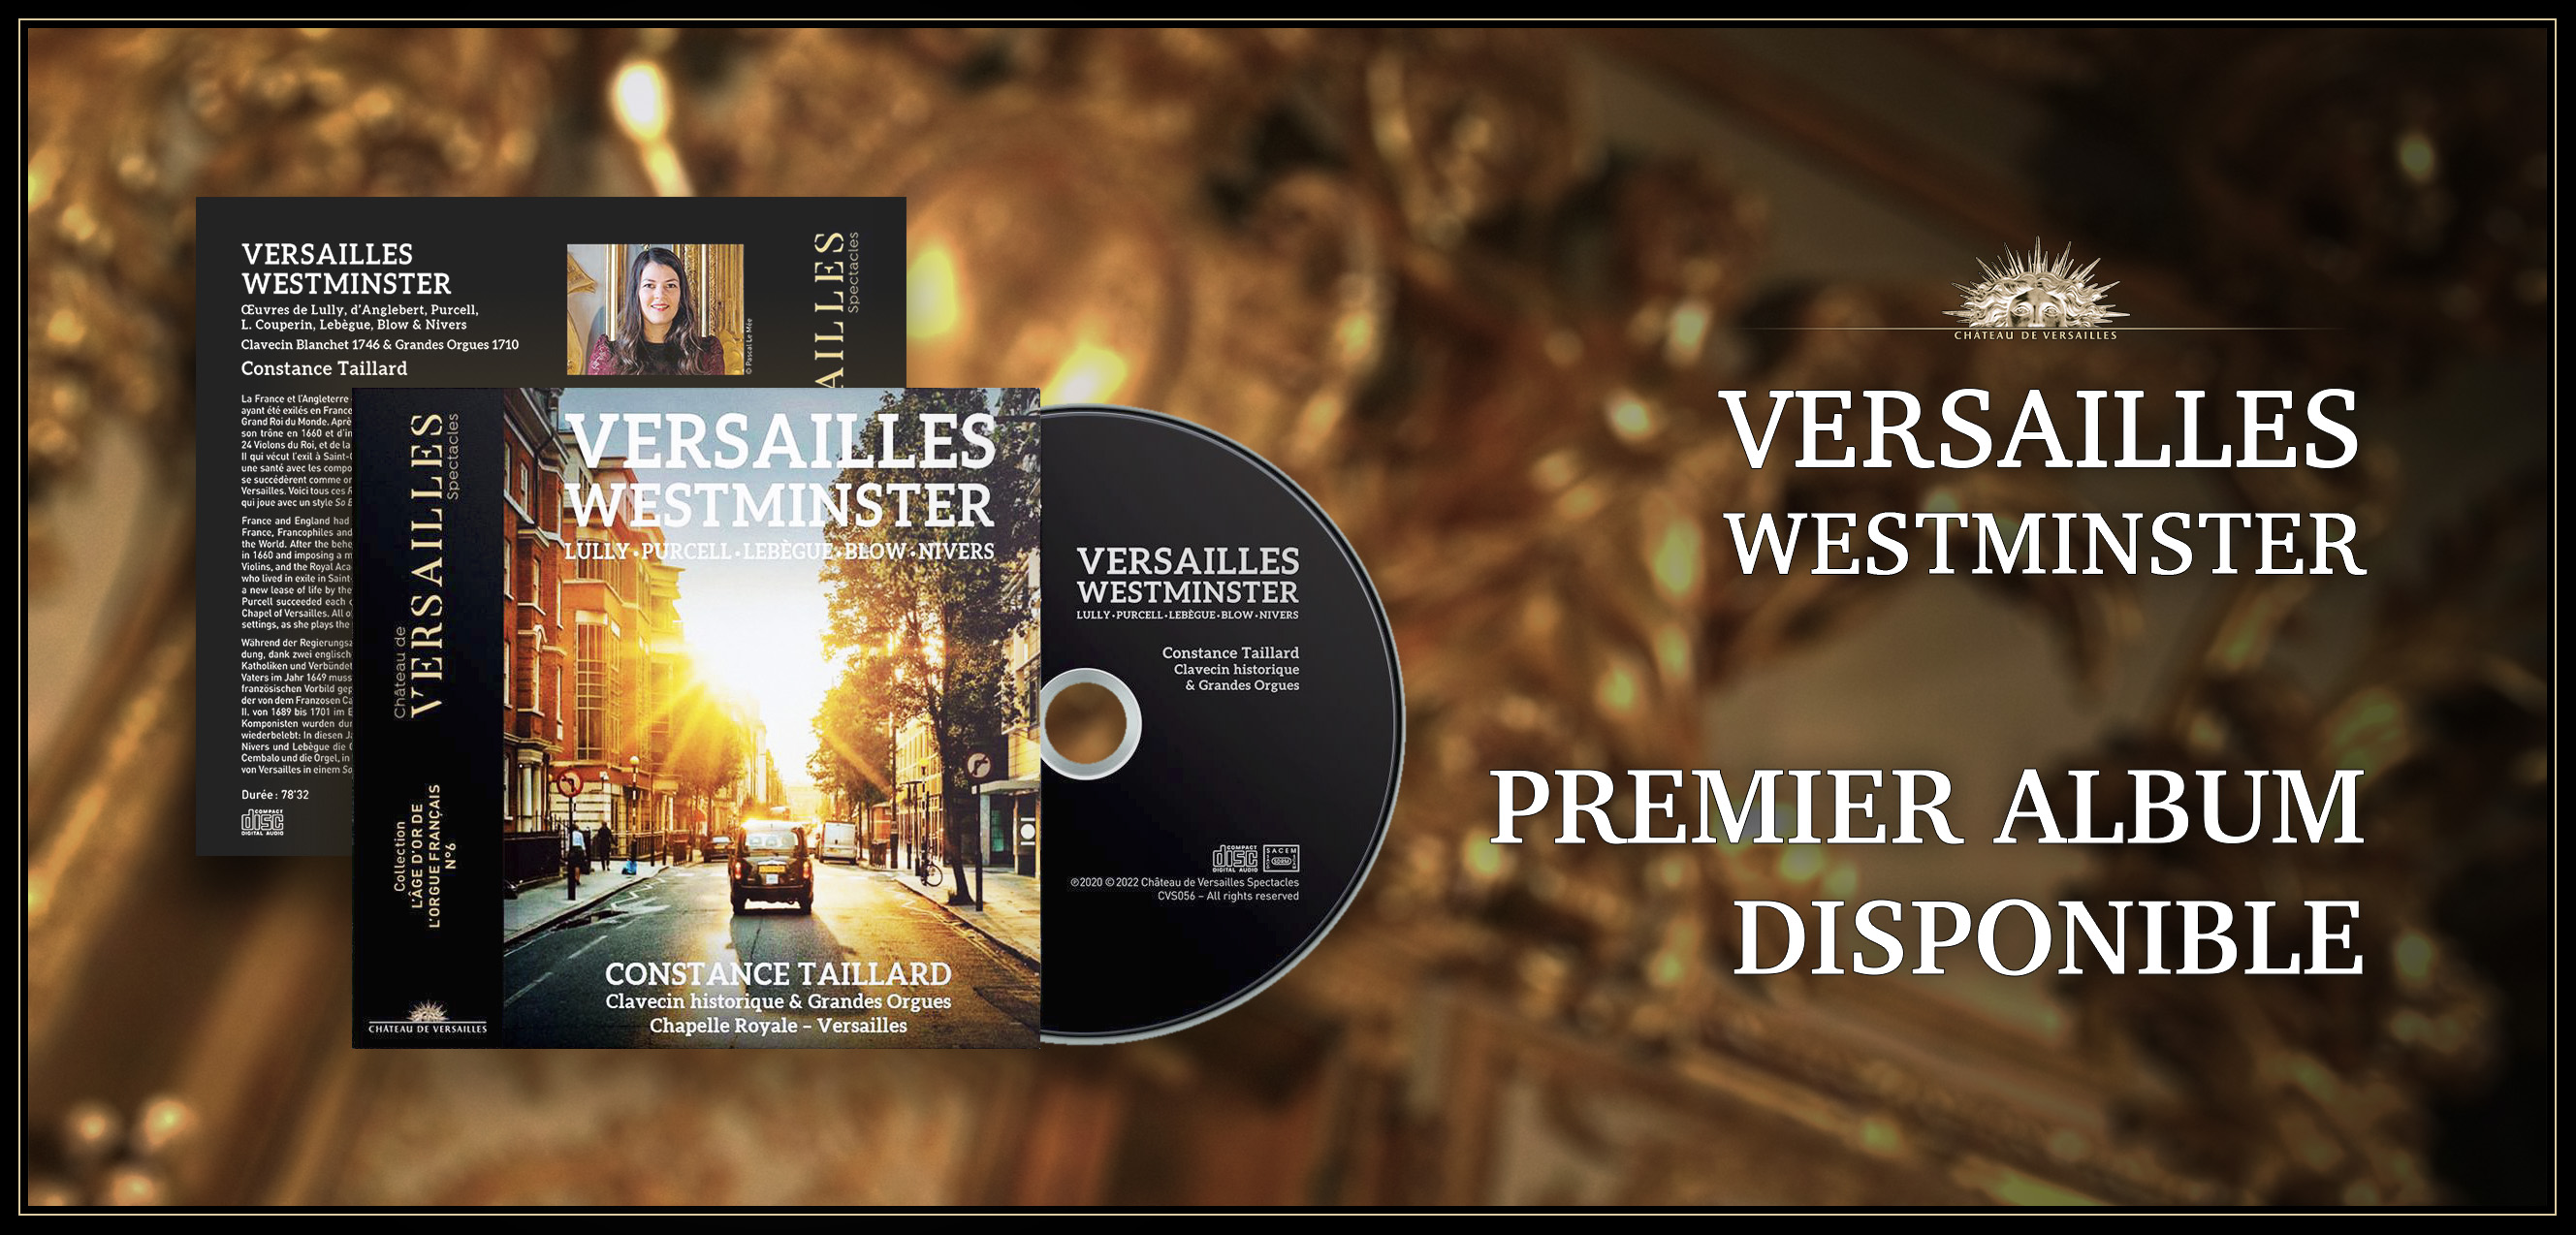 Versailles Westminster - Premier Album Disponible